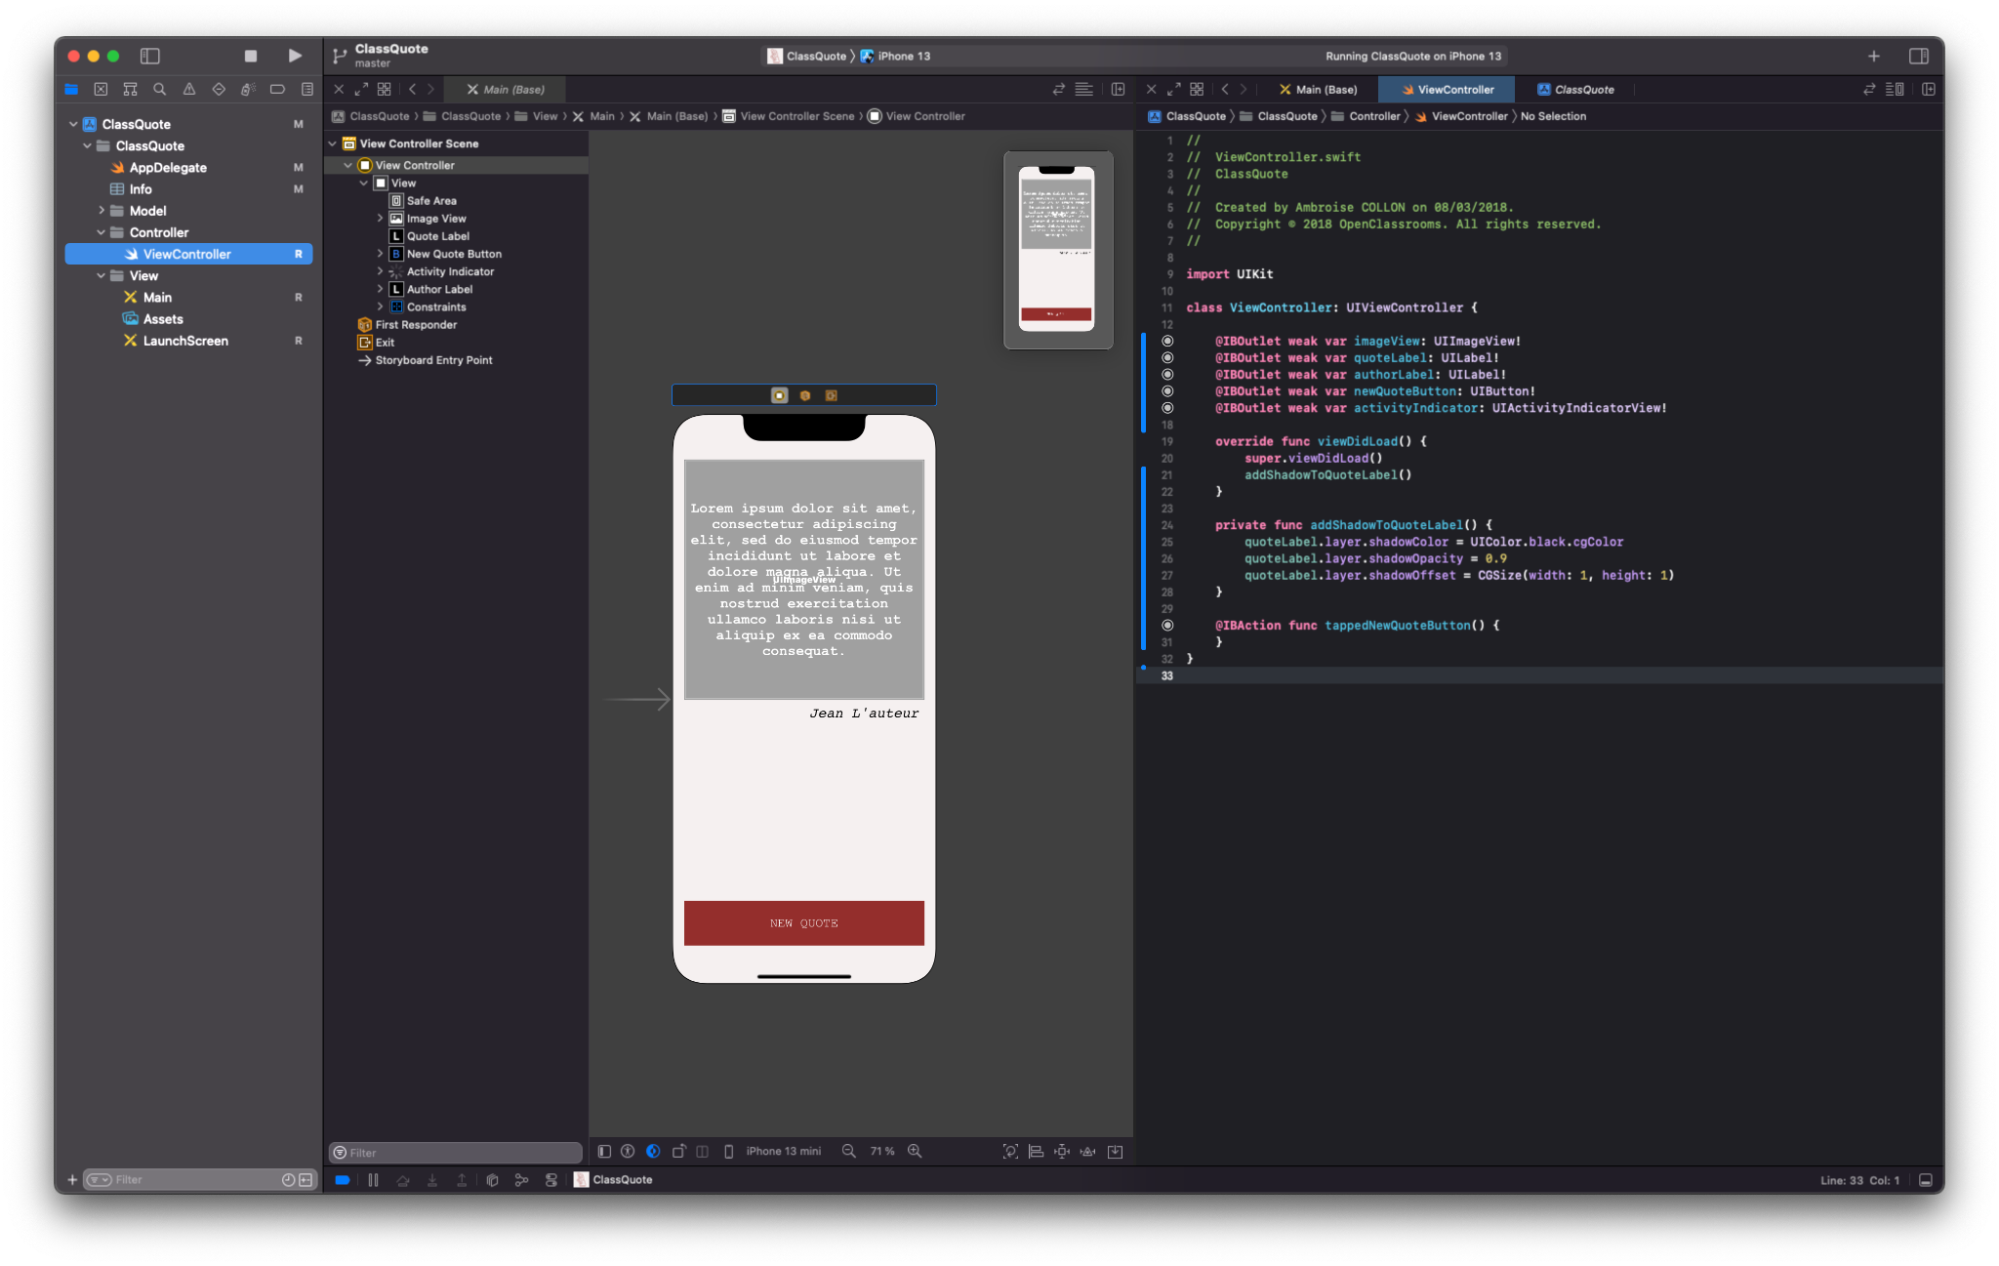 Capture d’écran de l’environnement de développement de l’application : à gauche les fichiers, au milieu l’interface du téléphone, à droite le code.